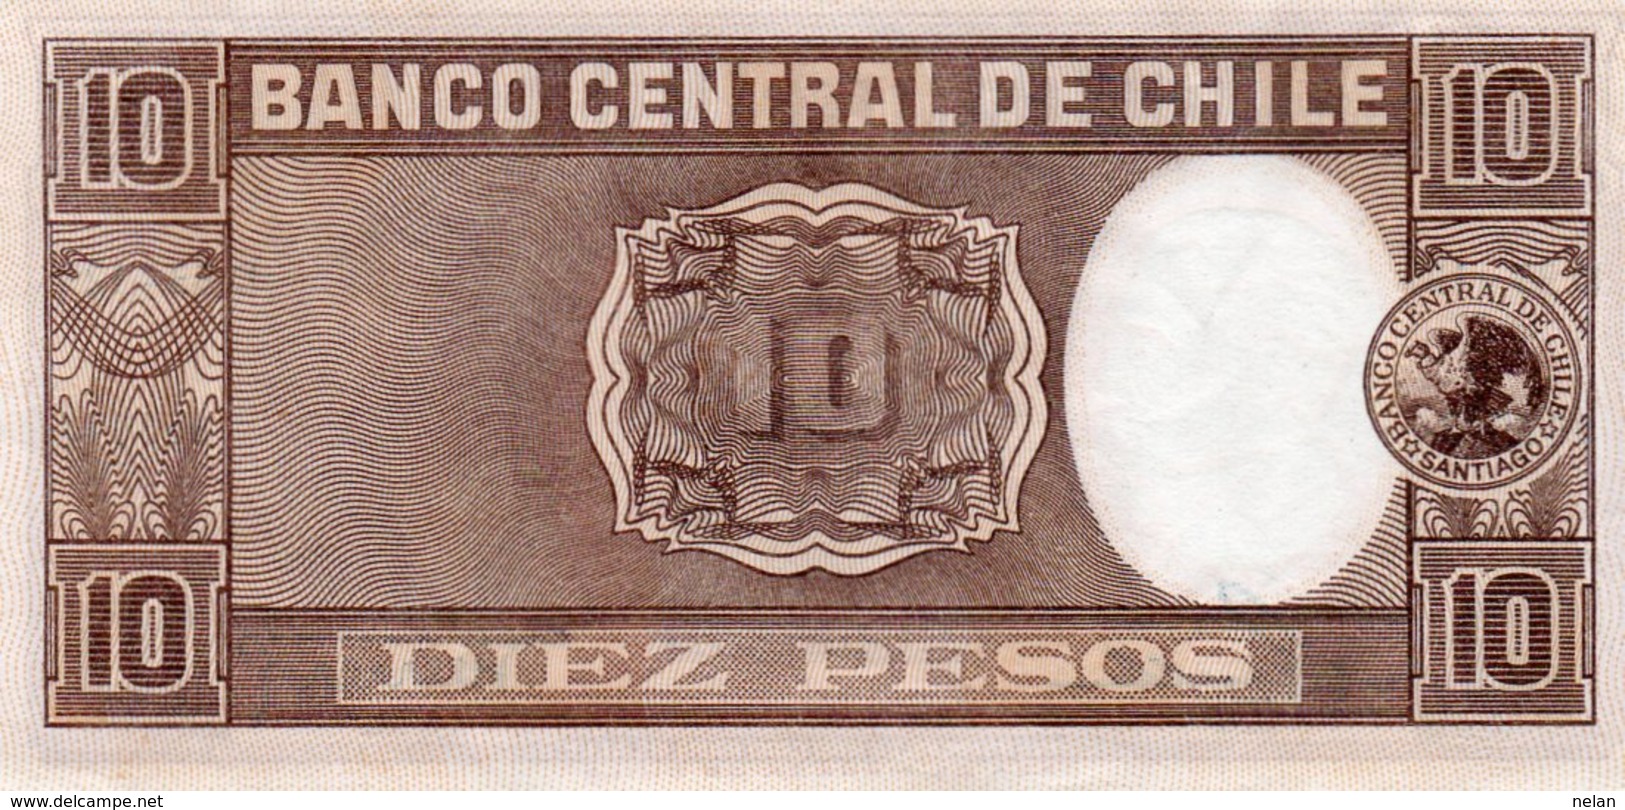 CHILE 10 PESOS 1958  P-120  AUNC - Chili